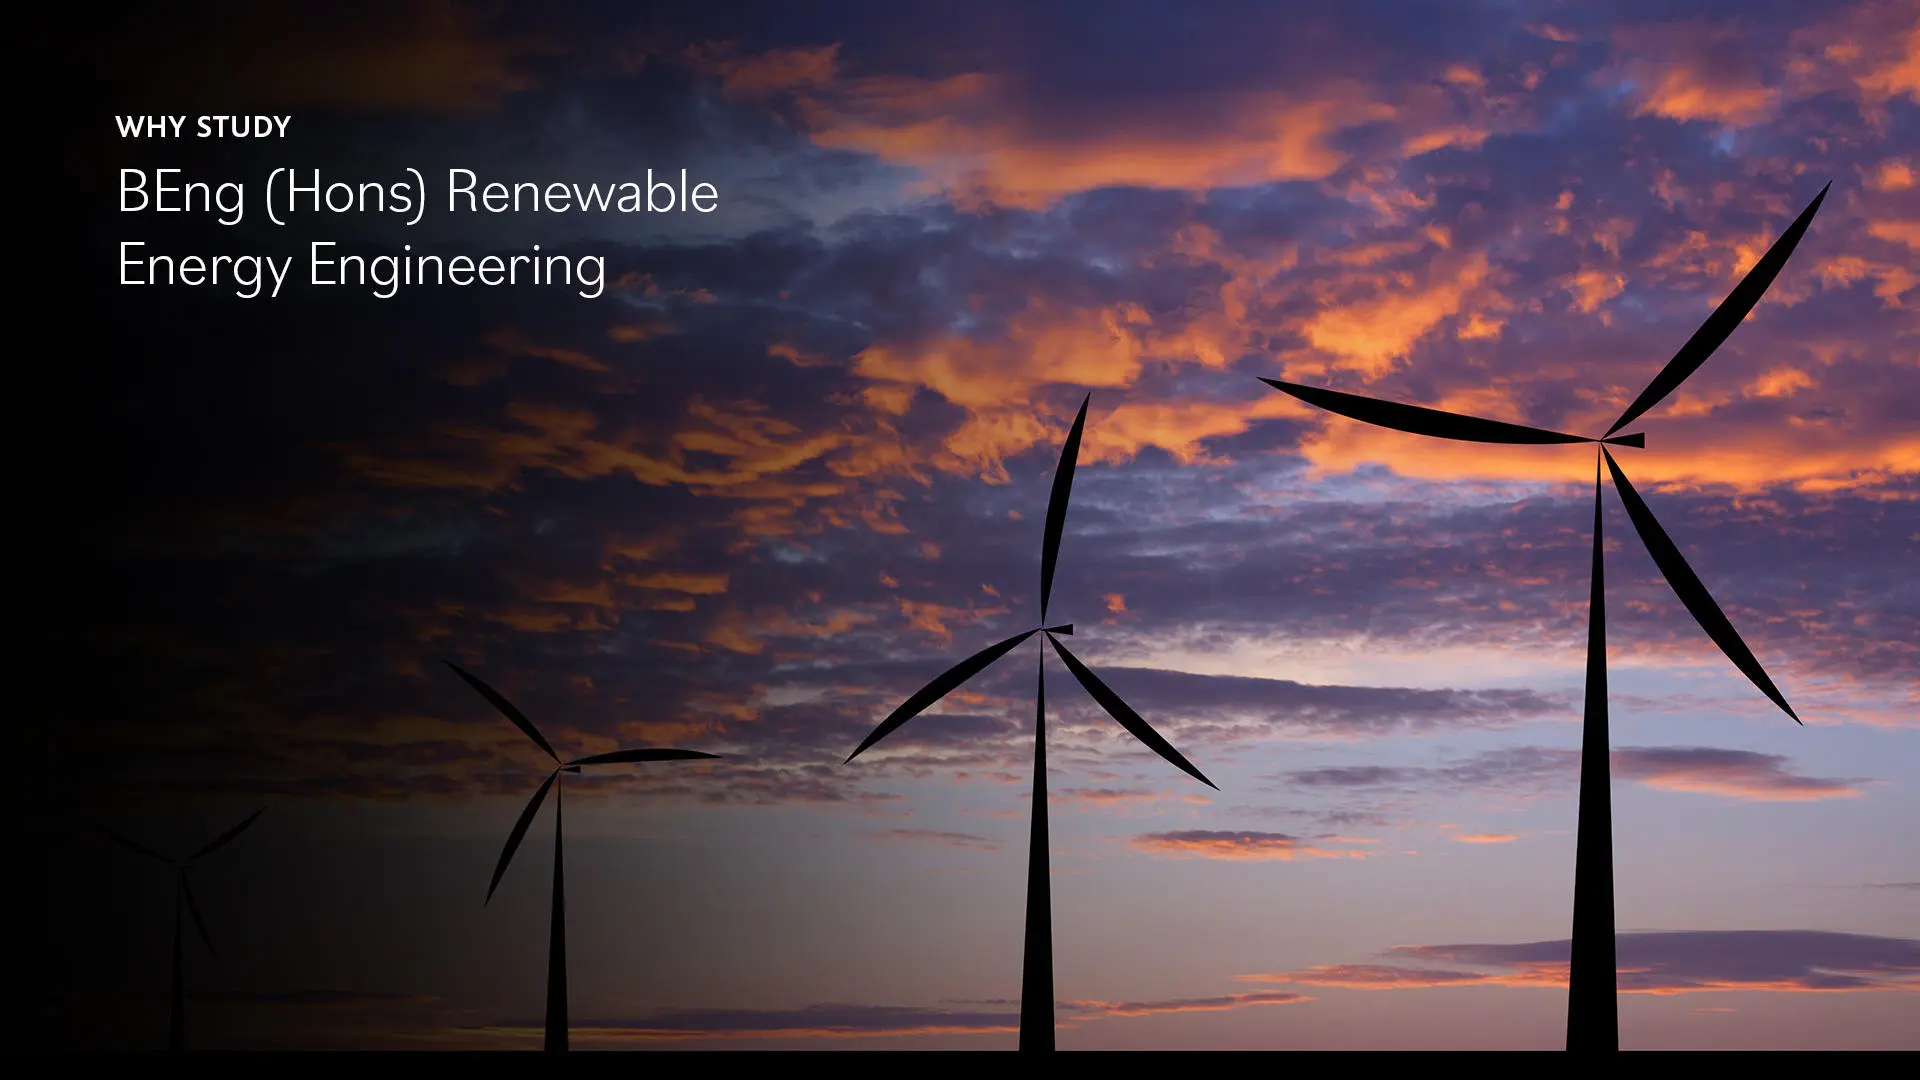 Image of wind turbines beneath words saying: 'Why study BEng (Hons) Renewable Energy Engineering'